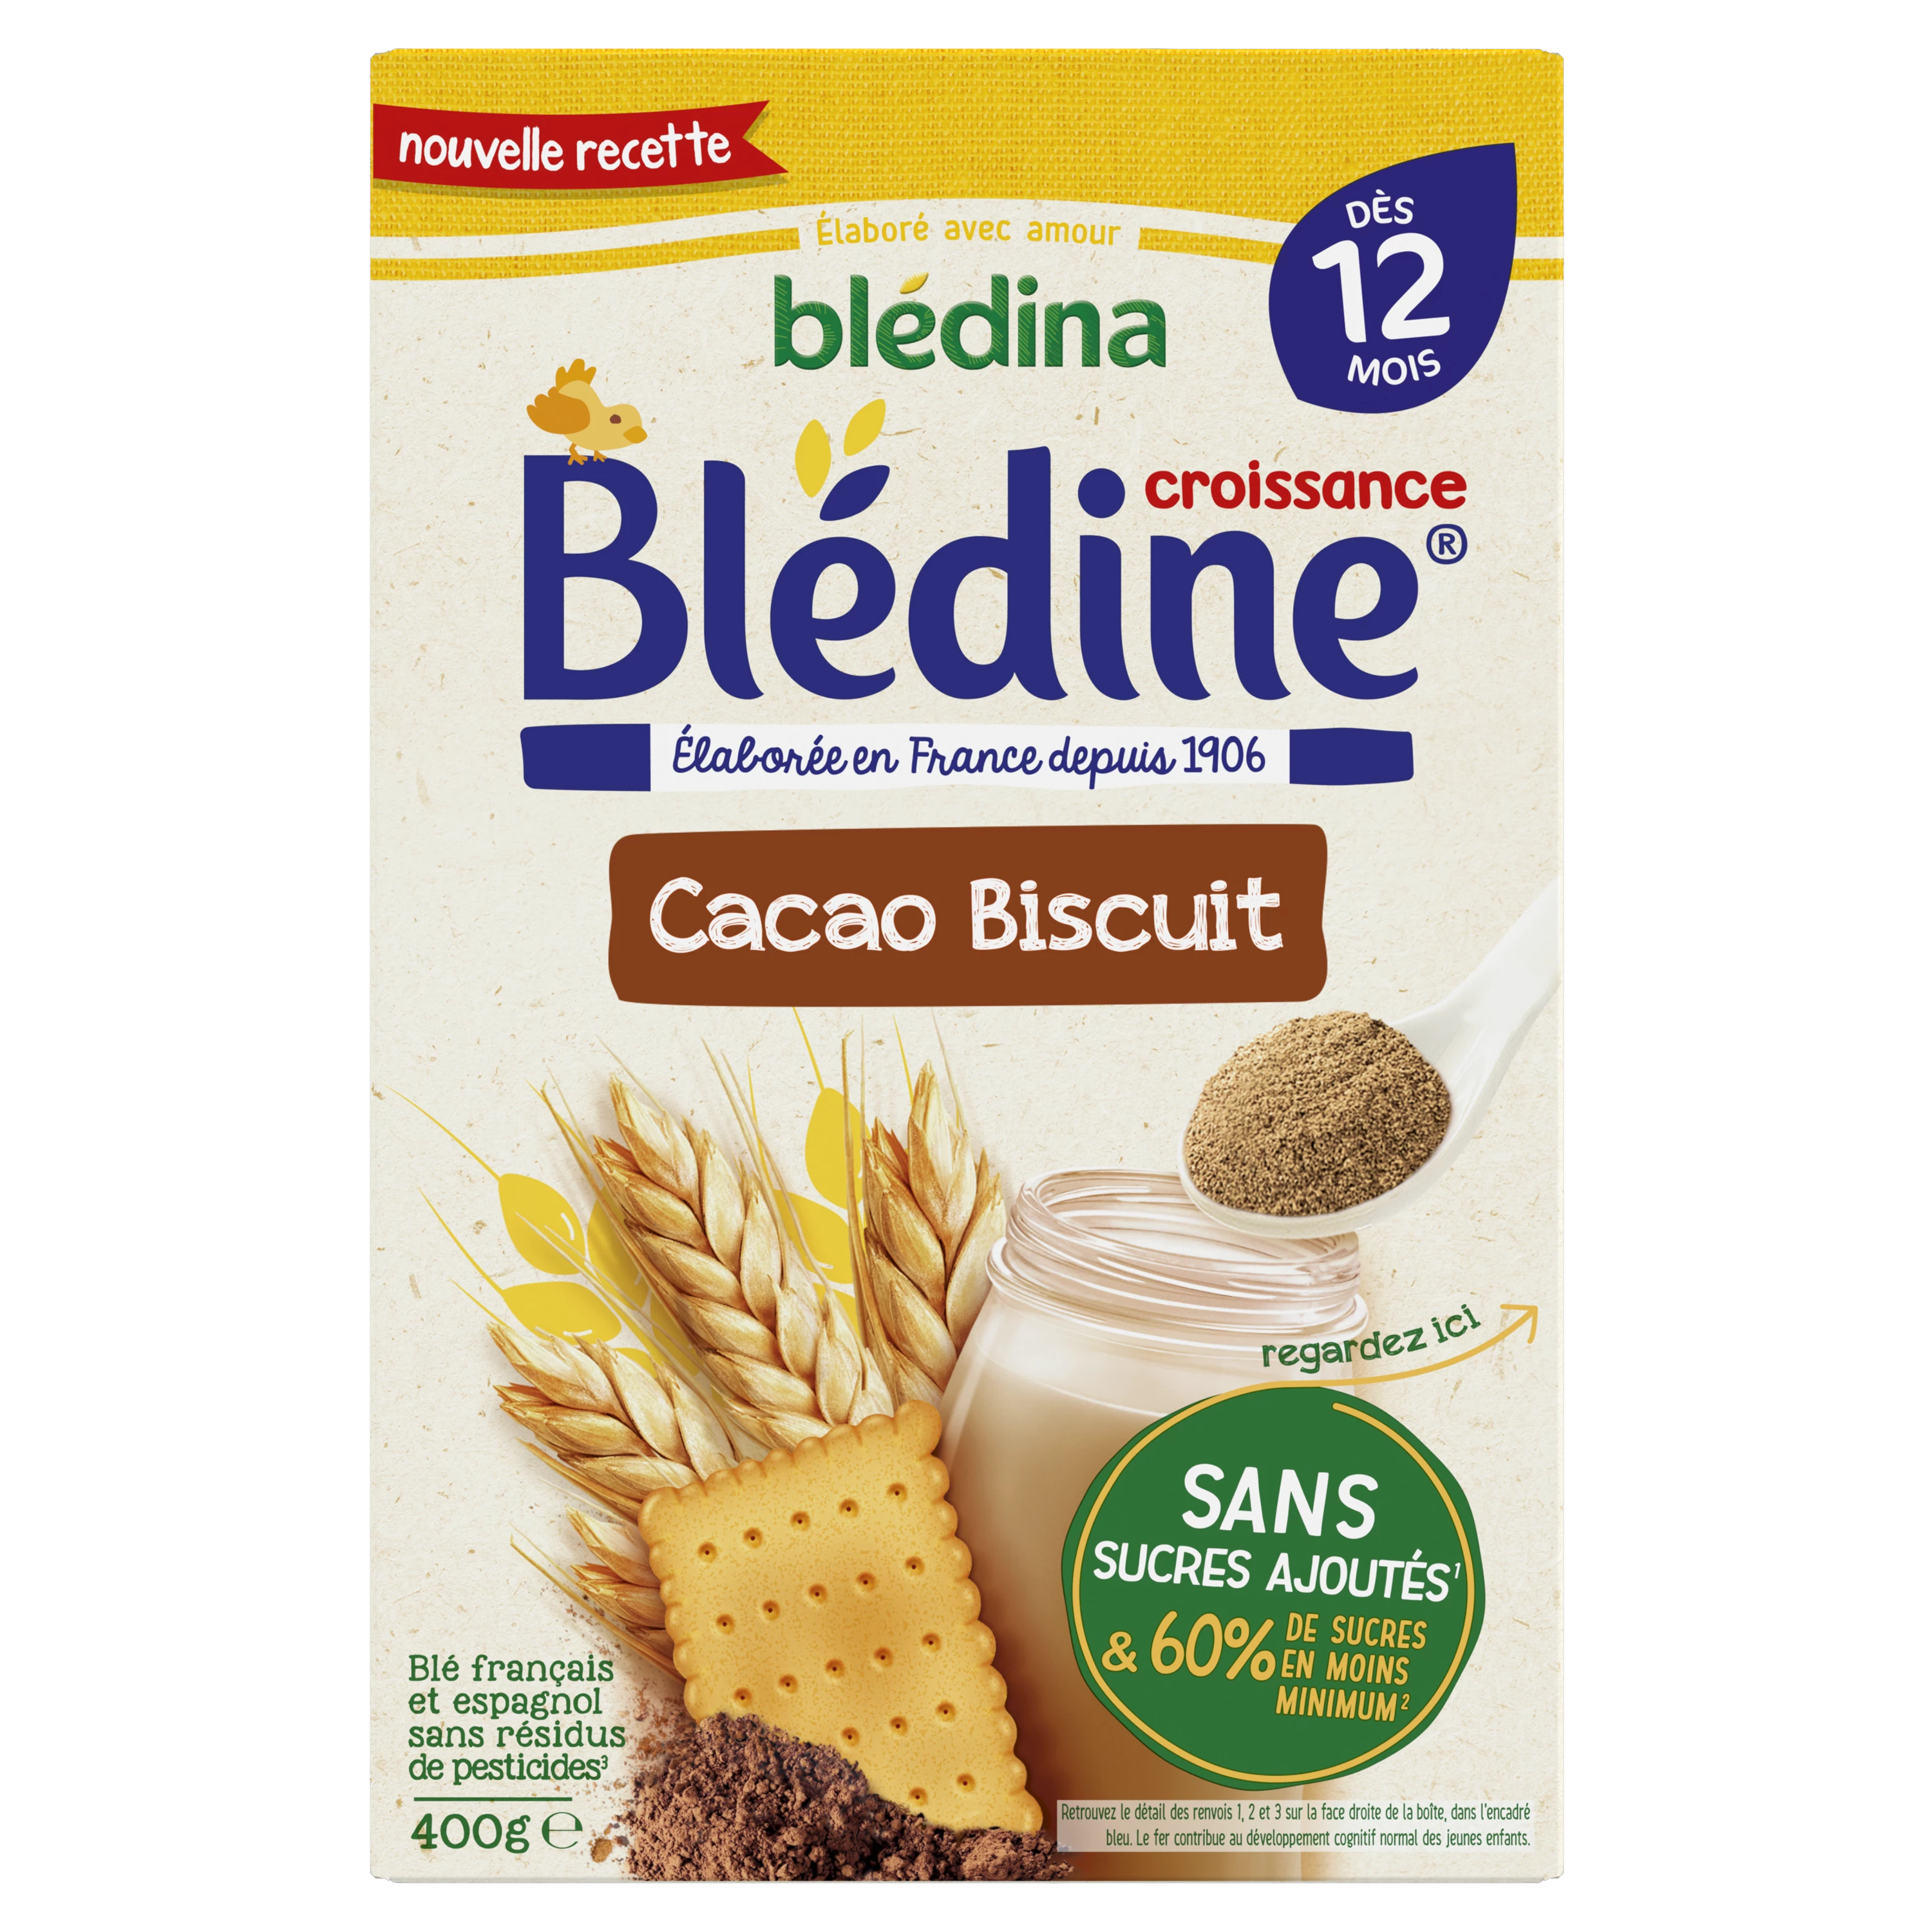 Céréales blédine croissance choco-biscuitée dès 12 mois 400g - BLEDINA